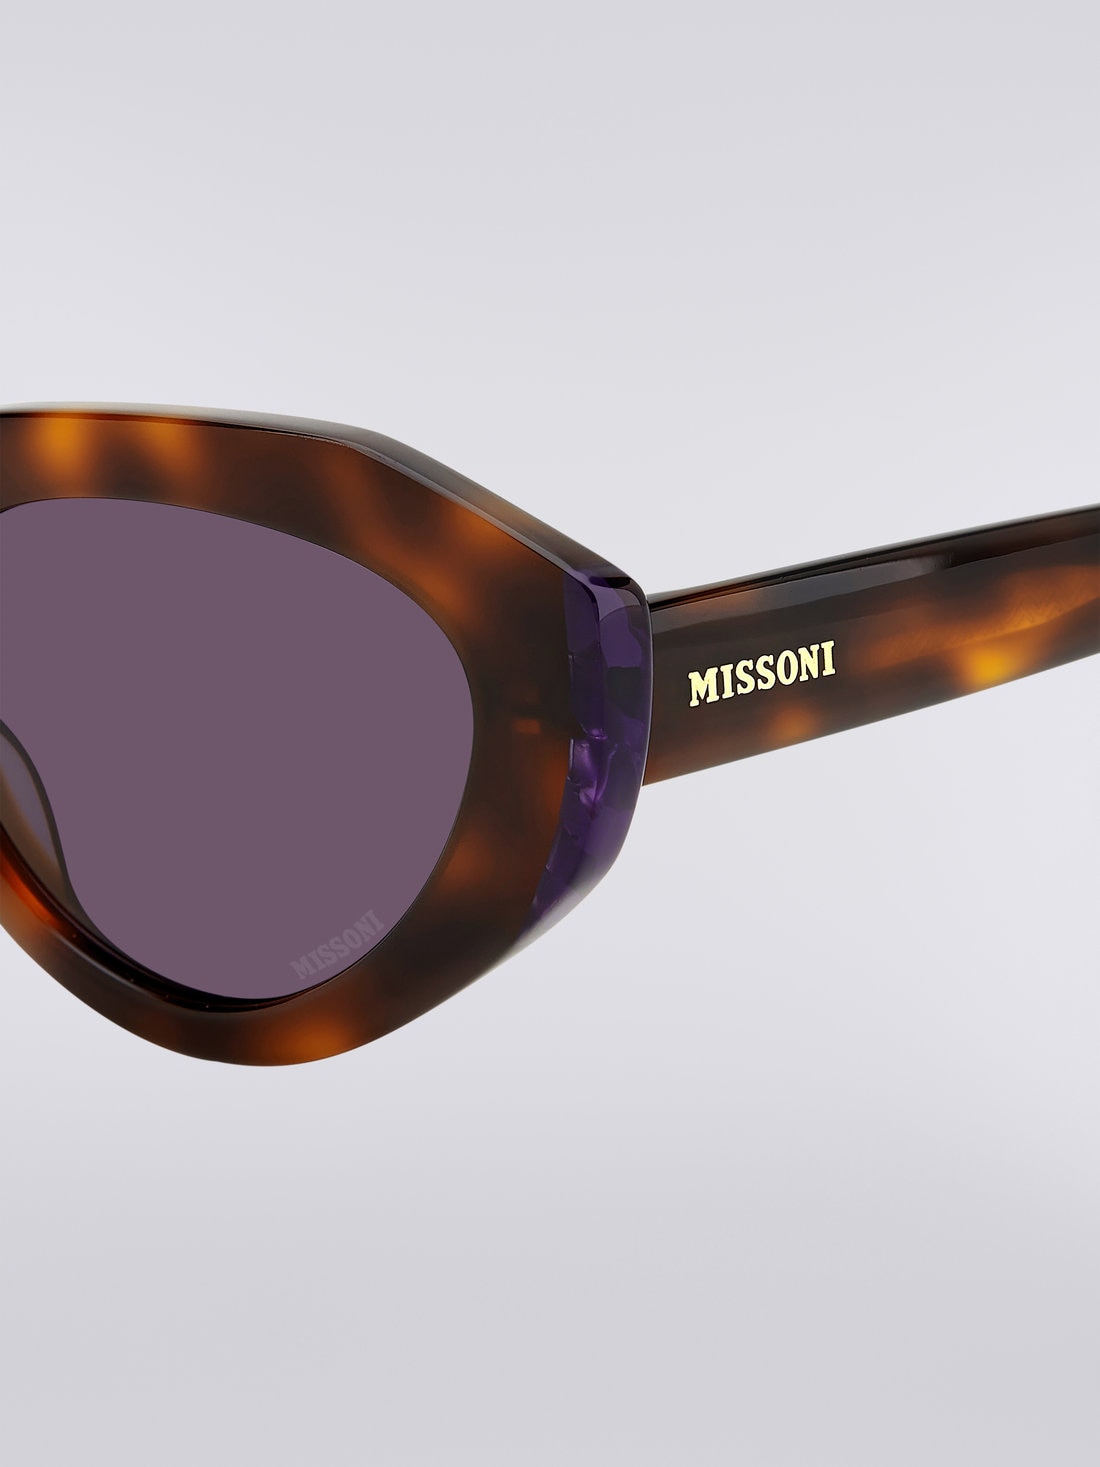 Gafas de sol Missoni Seasonal de acetato, Multicolor  - 8051575840173 - 3